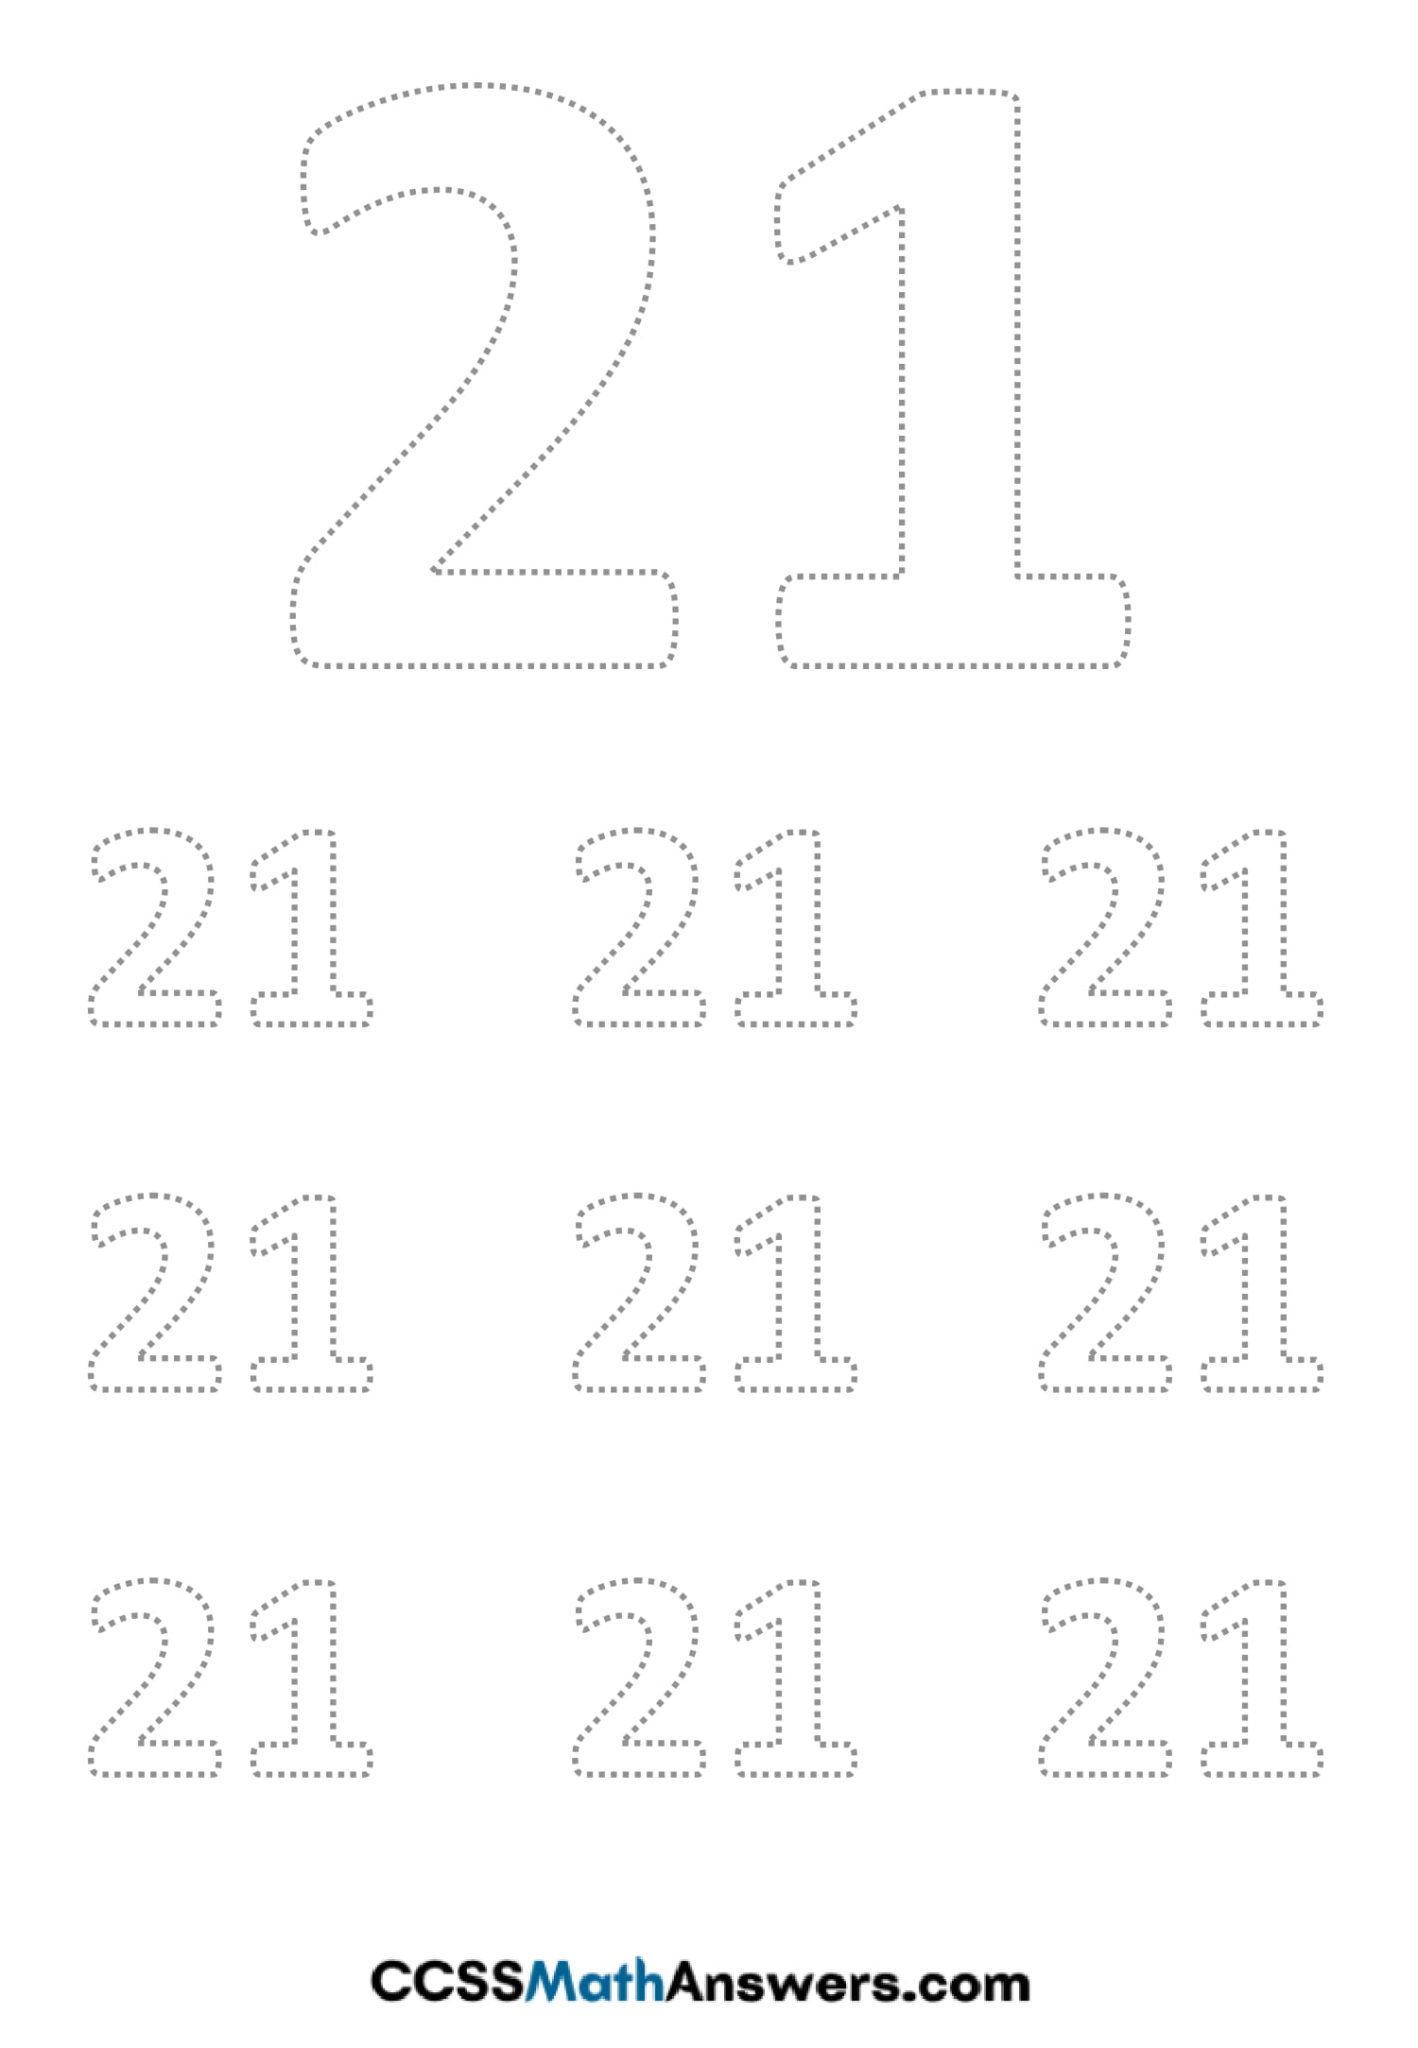 Worksheet on Number 21 Number 21 Tracing Worksheets Free Printable